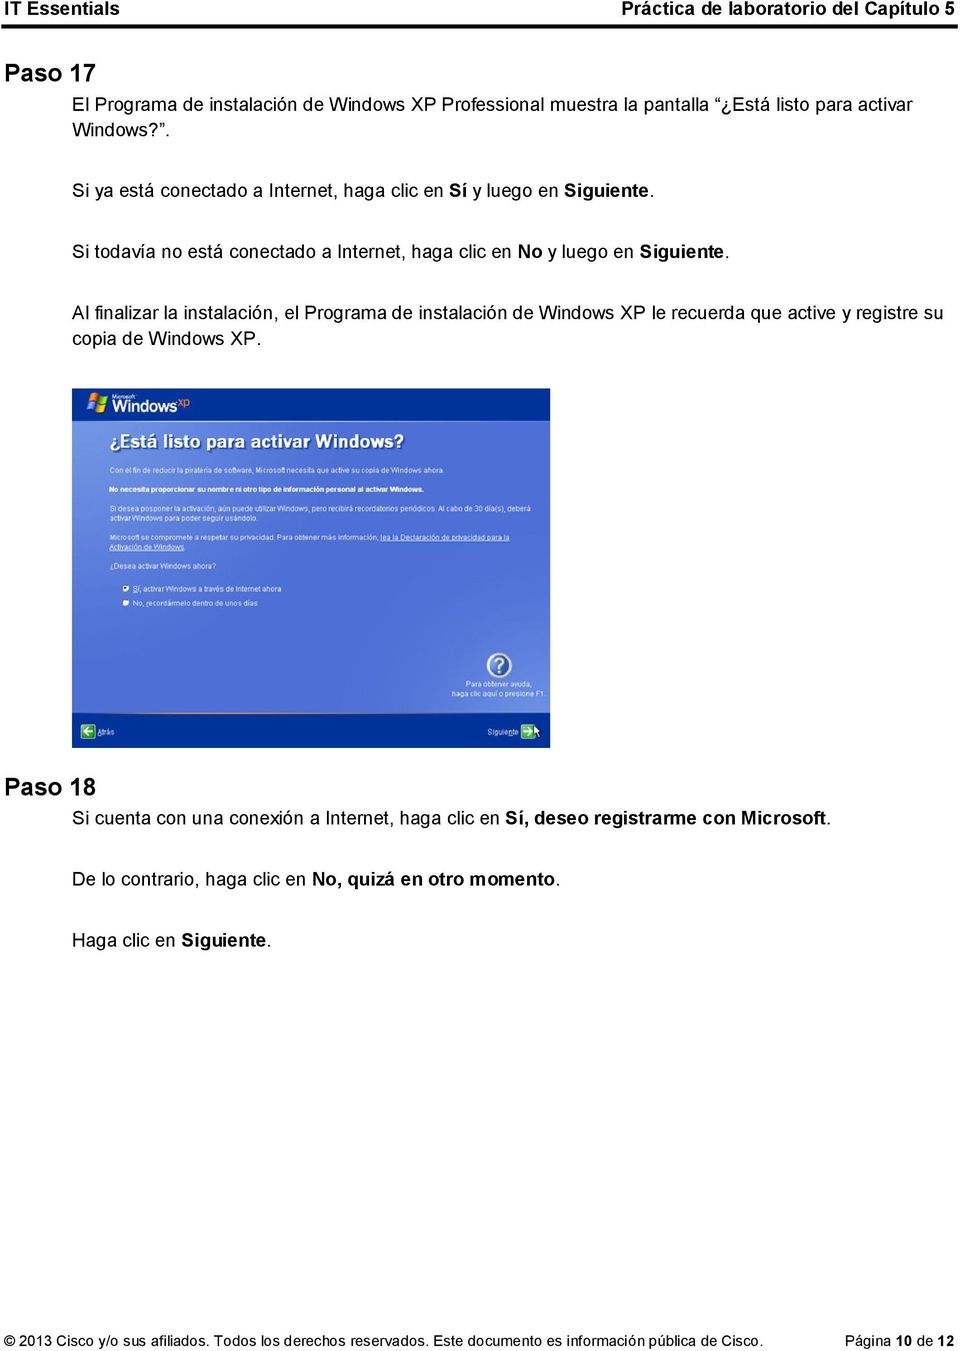 Al finalizar la instalación, el Programa de instalación de Windows XP le recuerda que active y registre su copia de Windows XP.